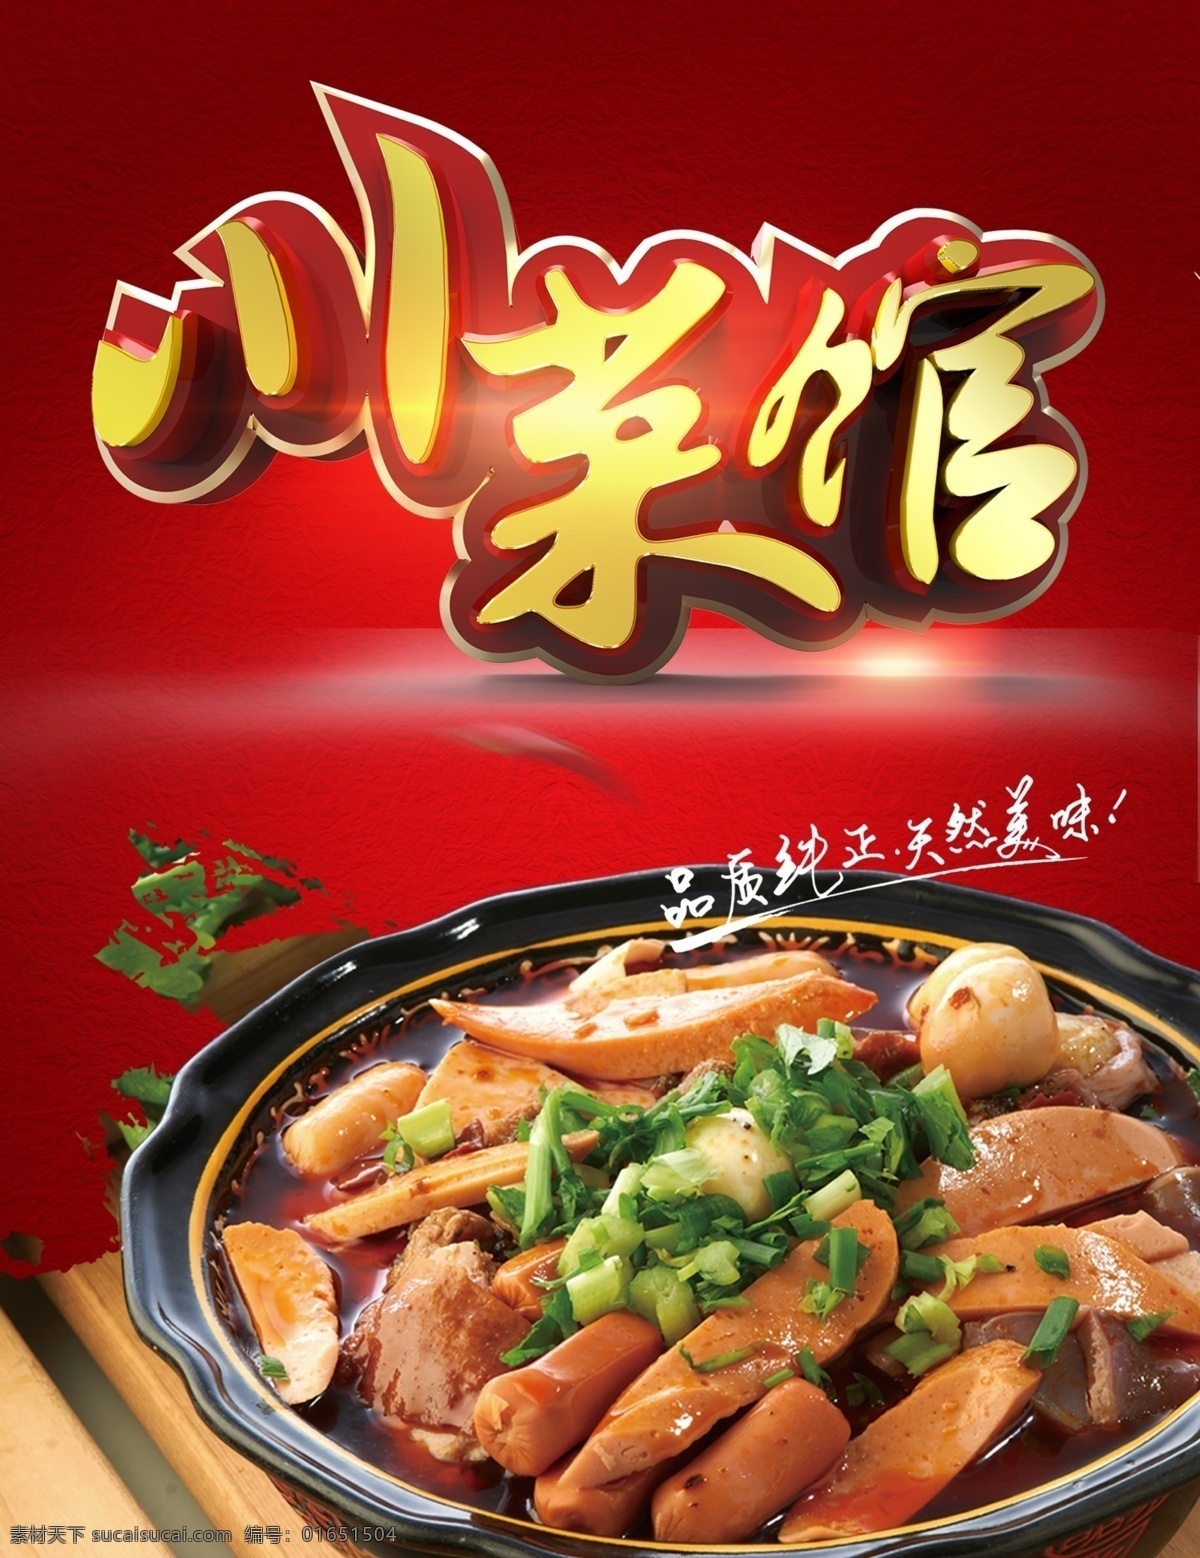 川菜馆 品质纯正 天然美味 火腿肠 大葱